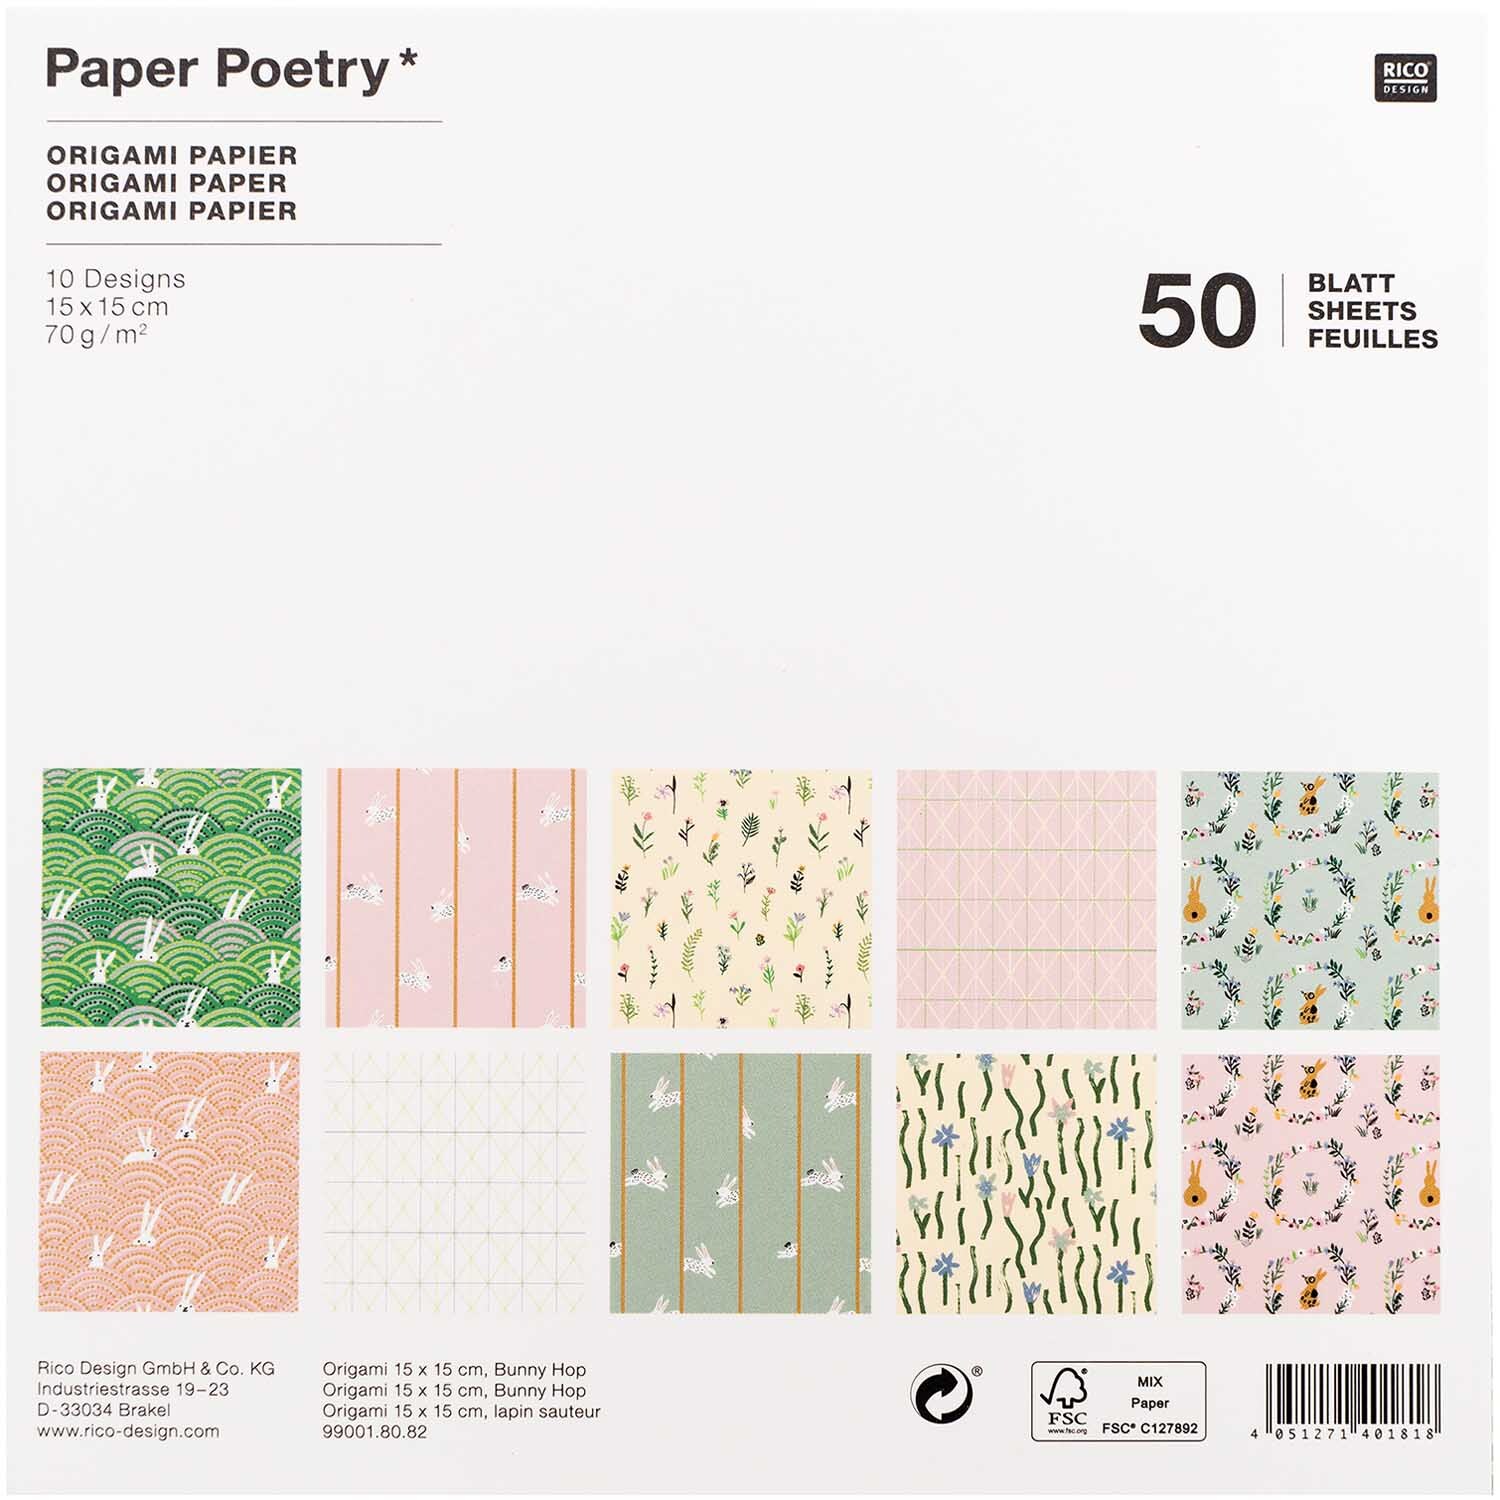 Paper Poetry Origami Bunny Hop 15x15cm 50 Blatt